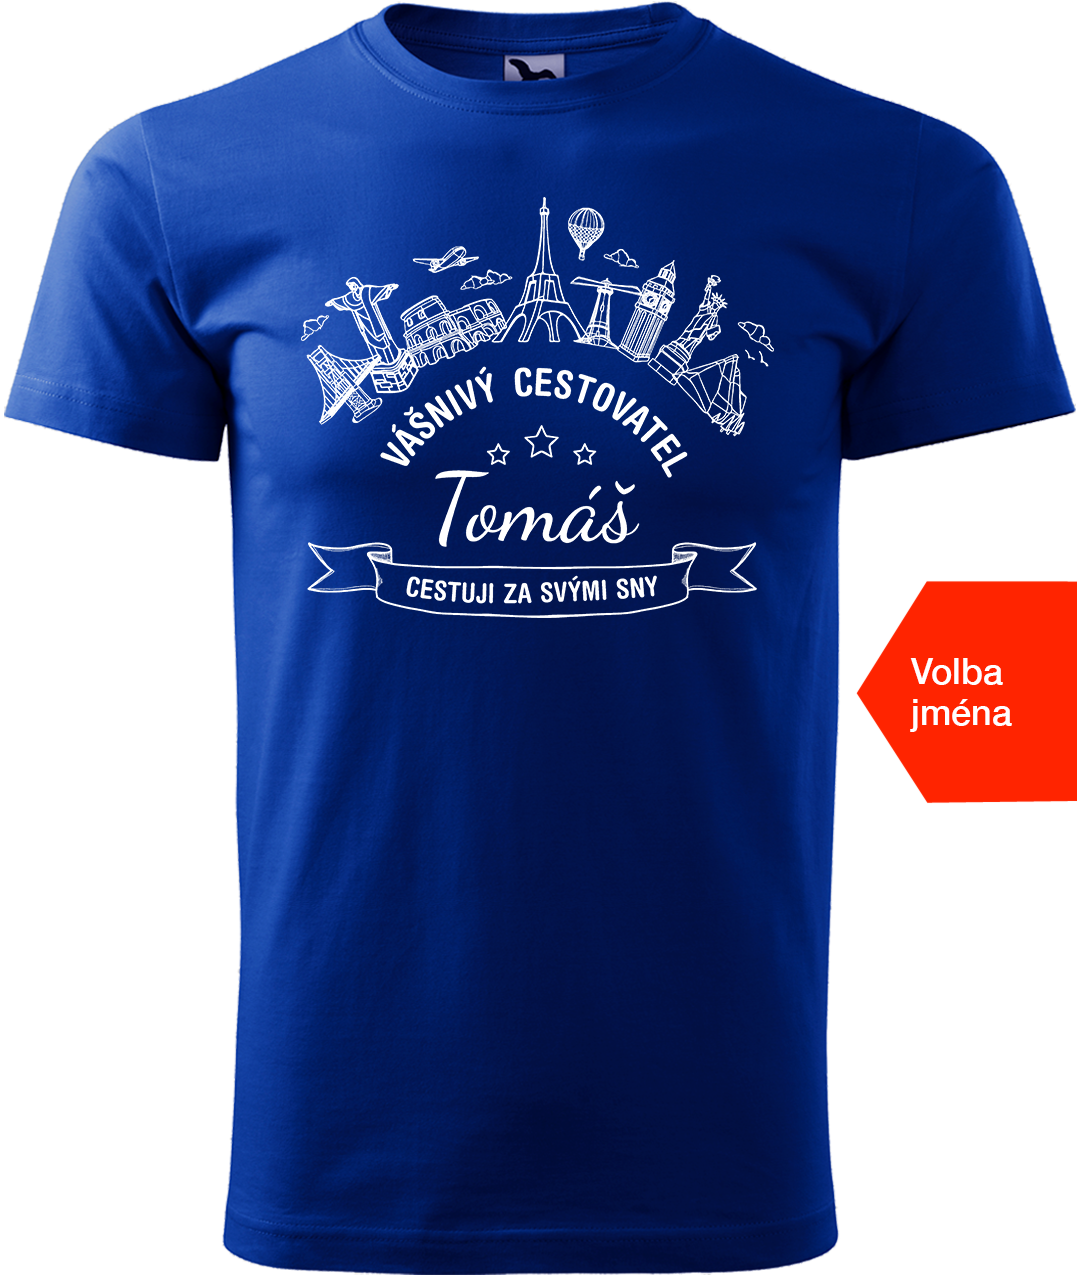 Pánské cestovatelské tričko se jménem - Vášnivý cestovatel Velikost: XL, Barva: Královská modrá (05)